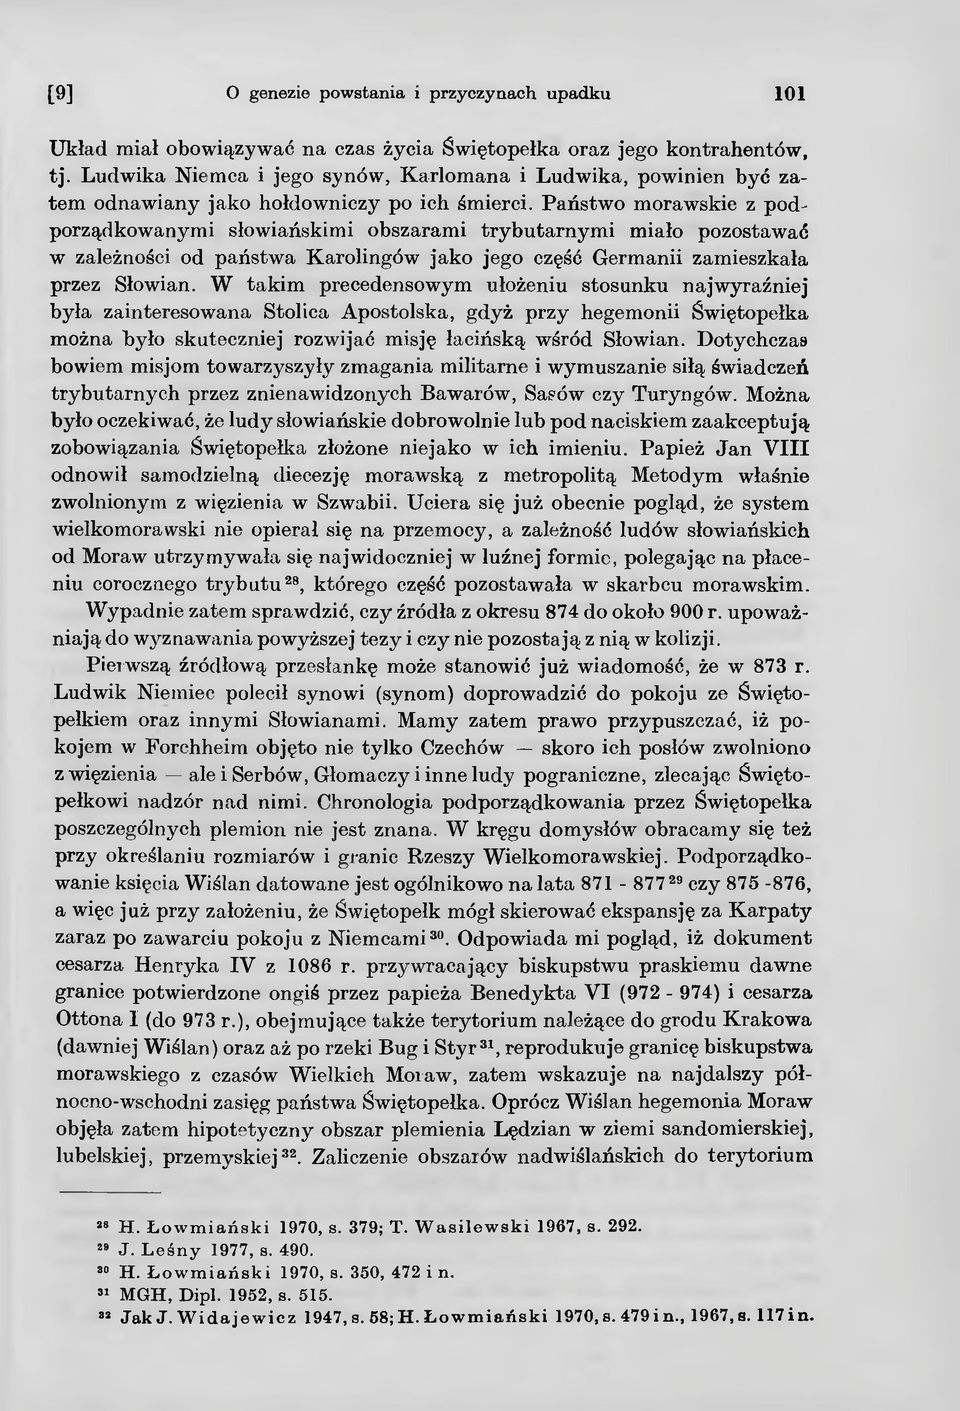 W takim precedensowym ułożeniu stosunku najwyraźniej była zainteresowana Stolica Apostolska, gdyż przy hegemonii Świętopełka można było skuteczniej rozwijać misję łacińską wśród Słowian.